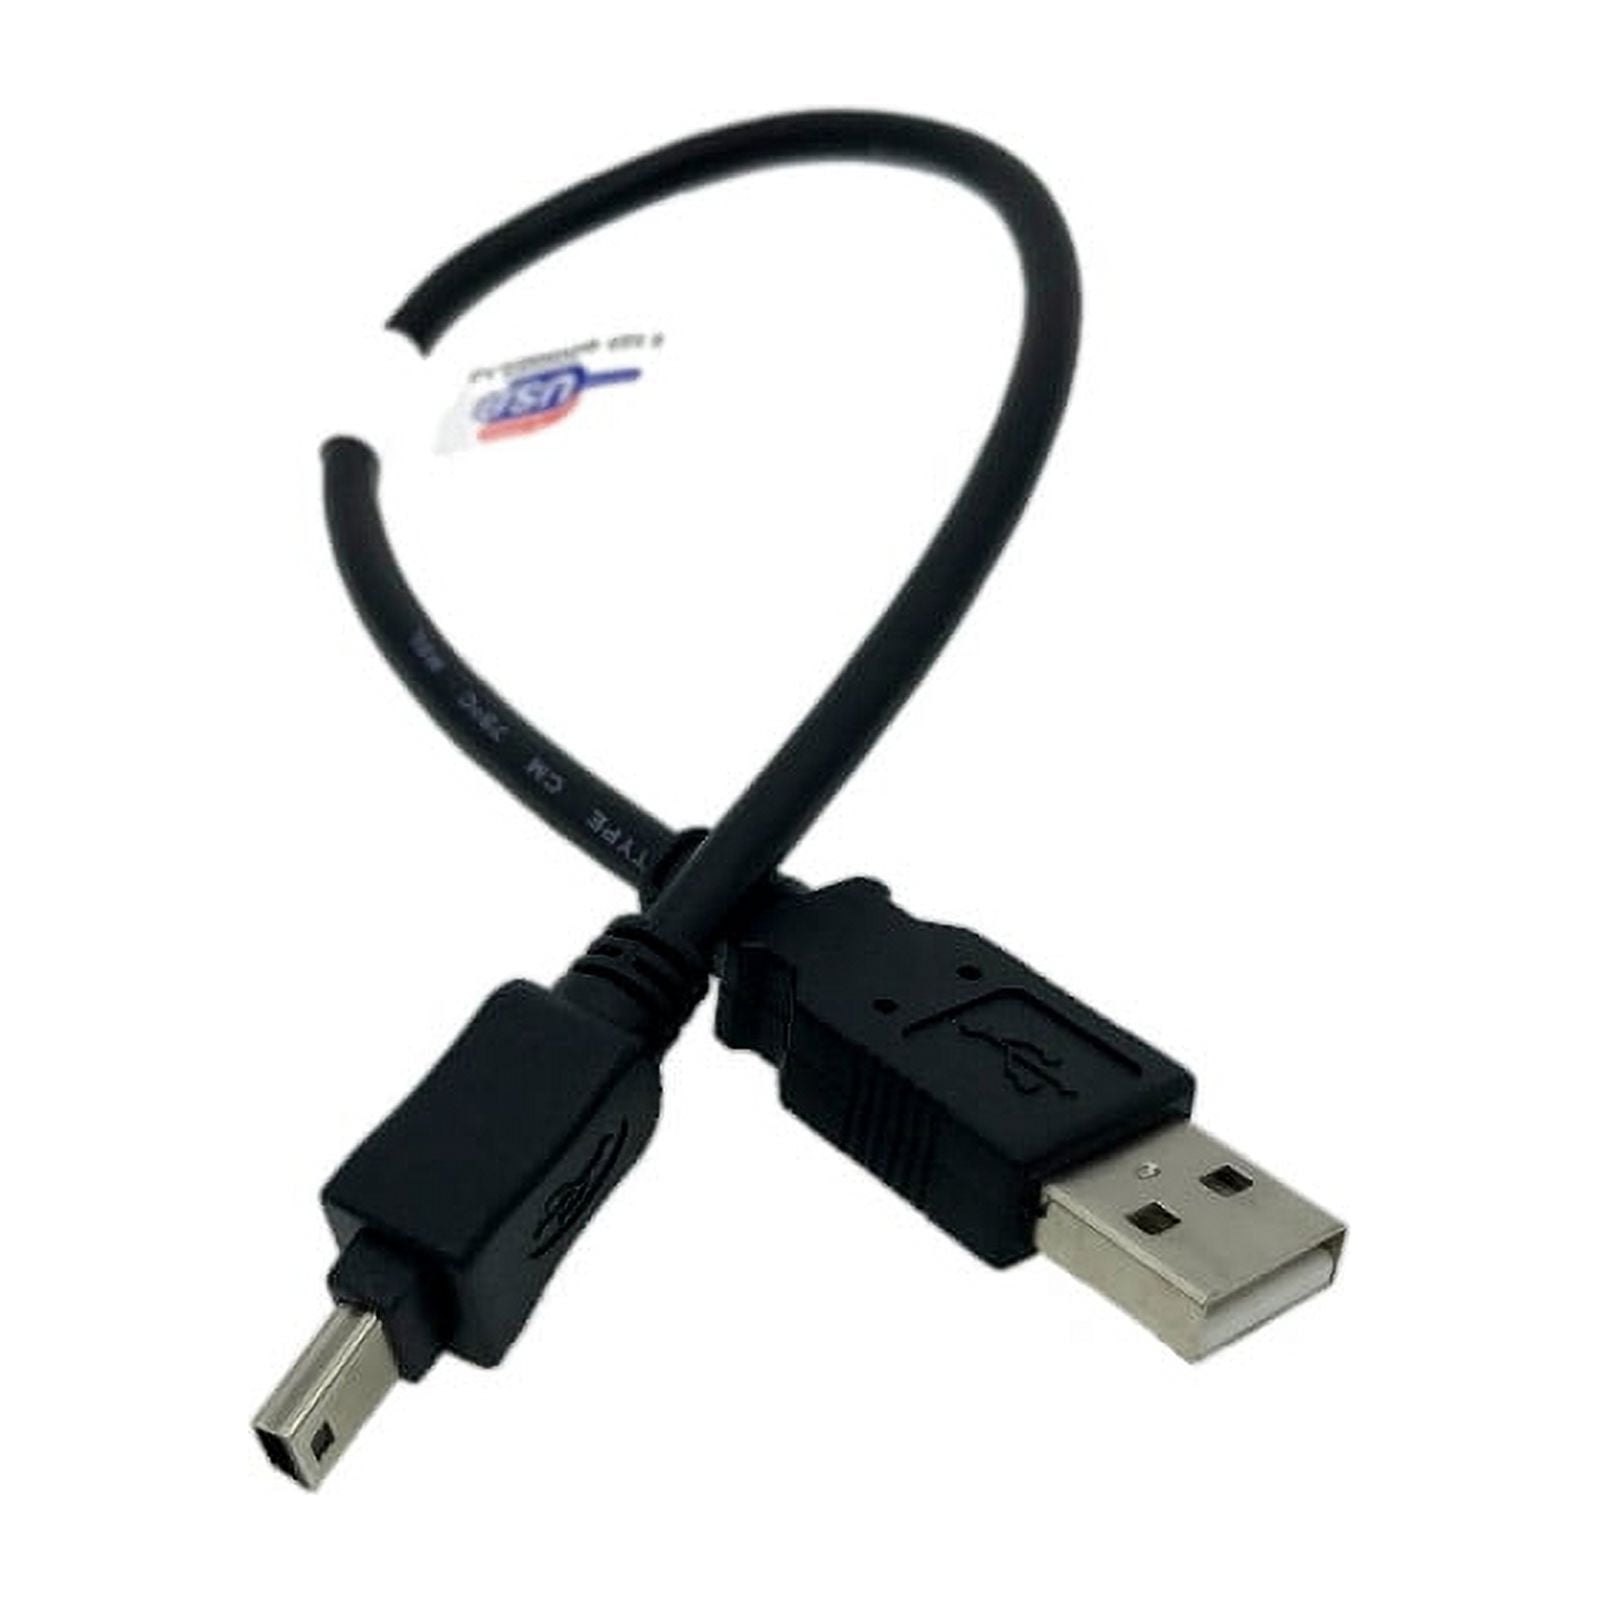 Garmin USB Cables